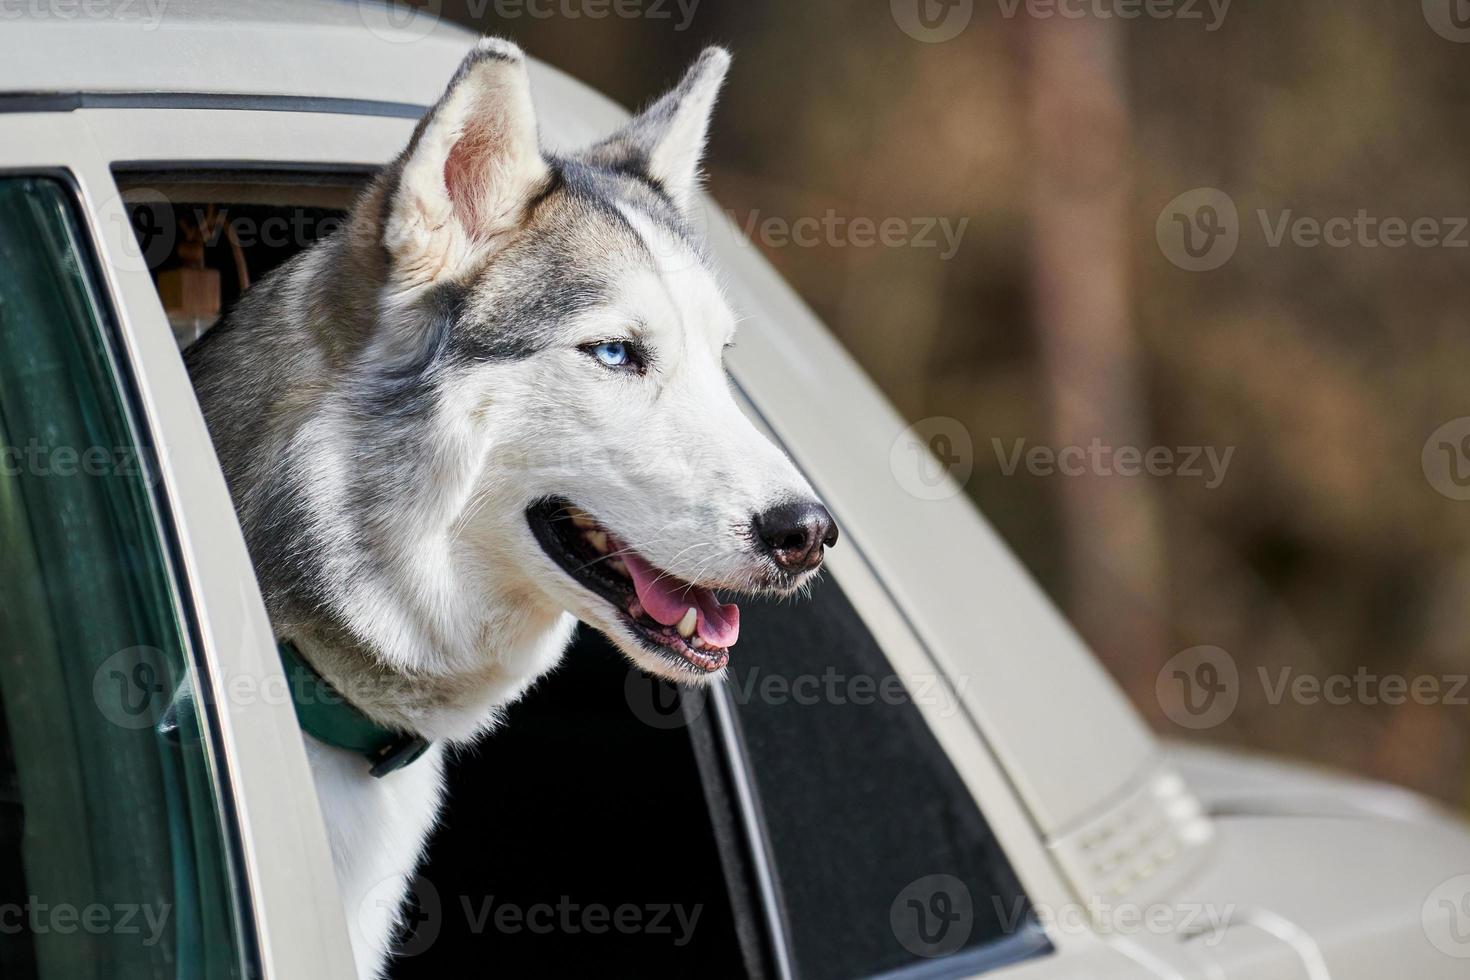 Auto Reisen mit sibirisch heiser Hund beugte sich vor aus Auto Fenster, heiser Hund Profil Porträt foto